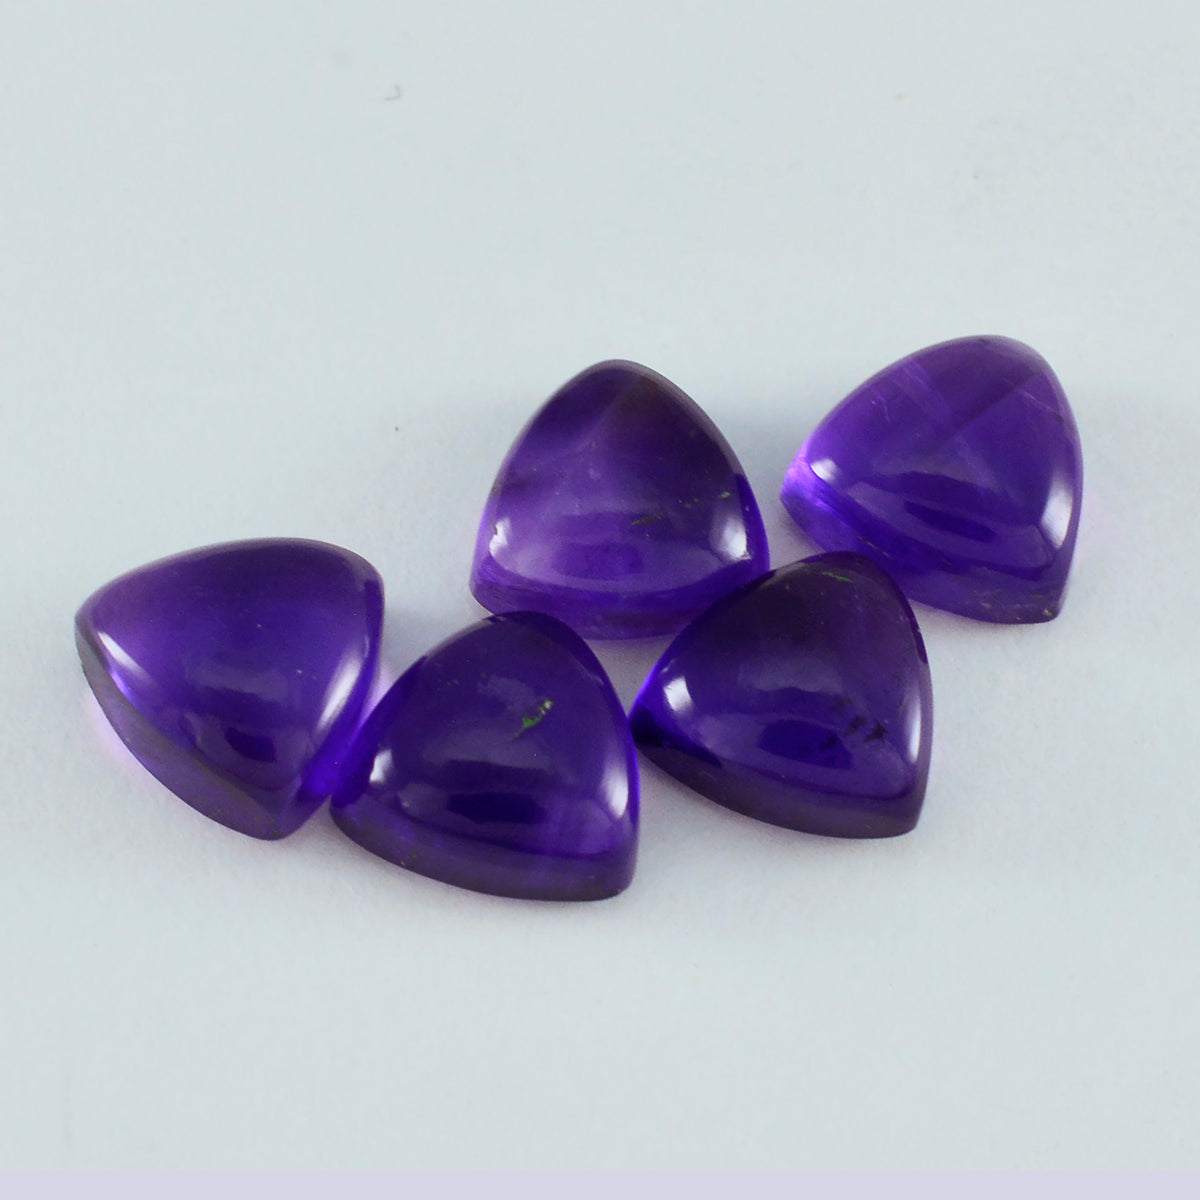 Riyogems 1PC Purple Amethyst Cabochon 5x5 mm Trillion Shape great Quality Loose Gem